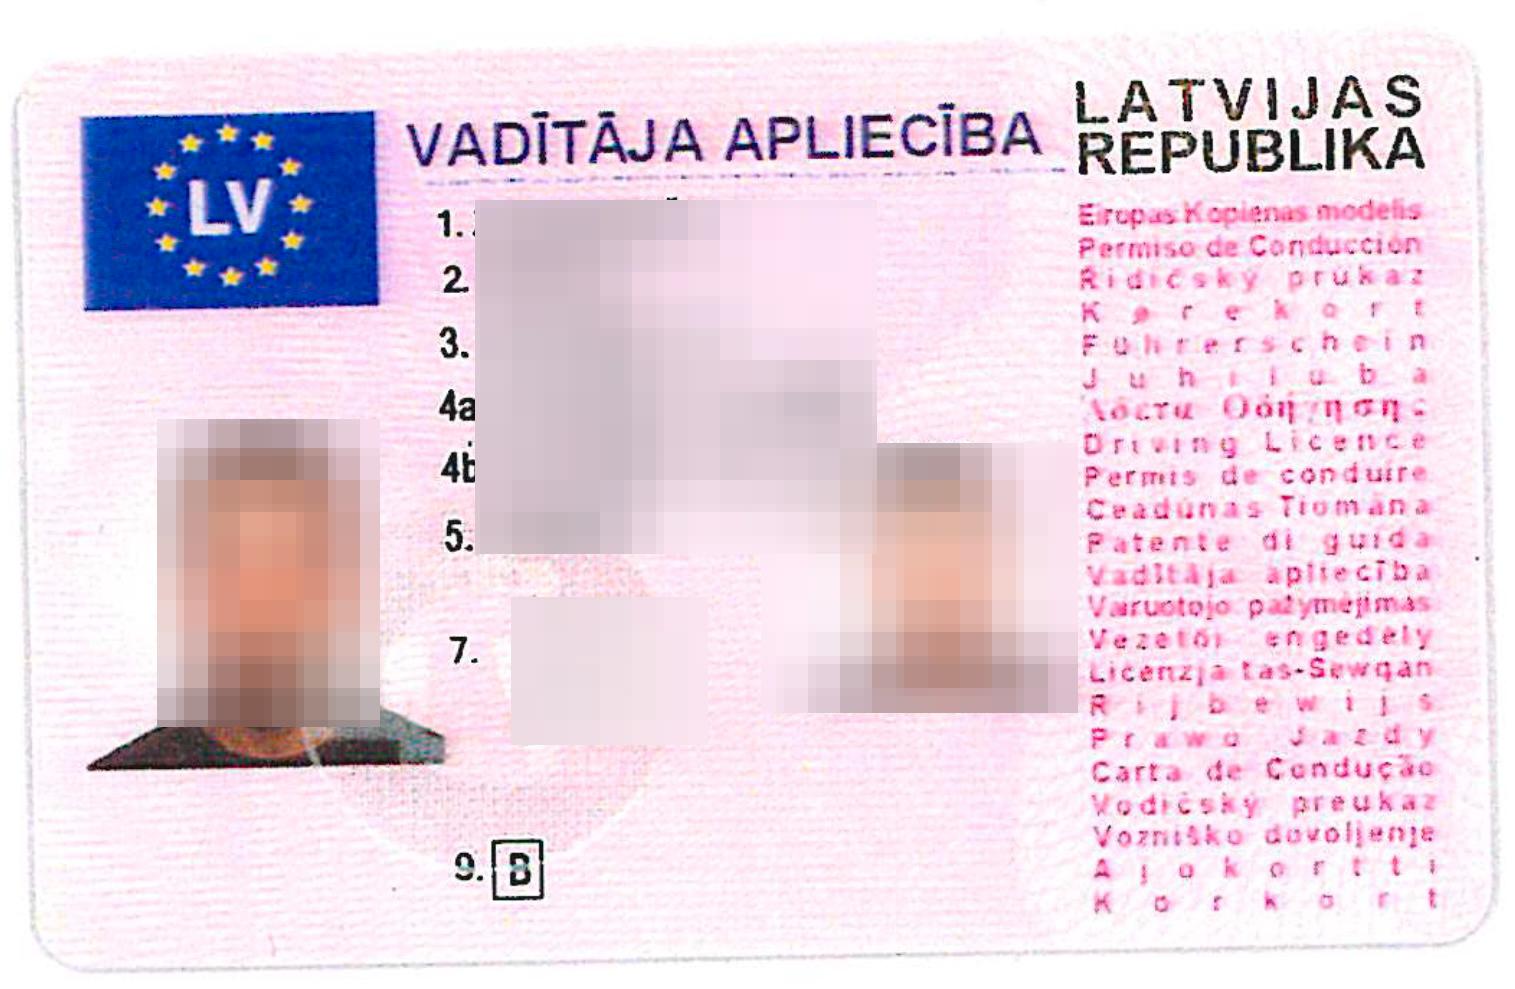 Använde sex olika namn. Här ett förfalskat lettiskt körkort...